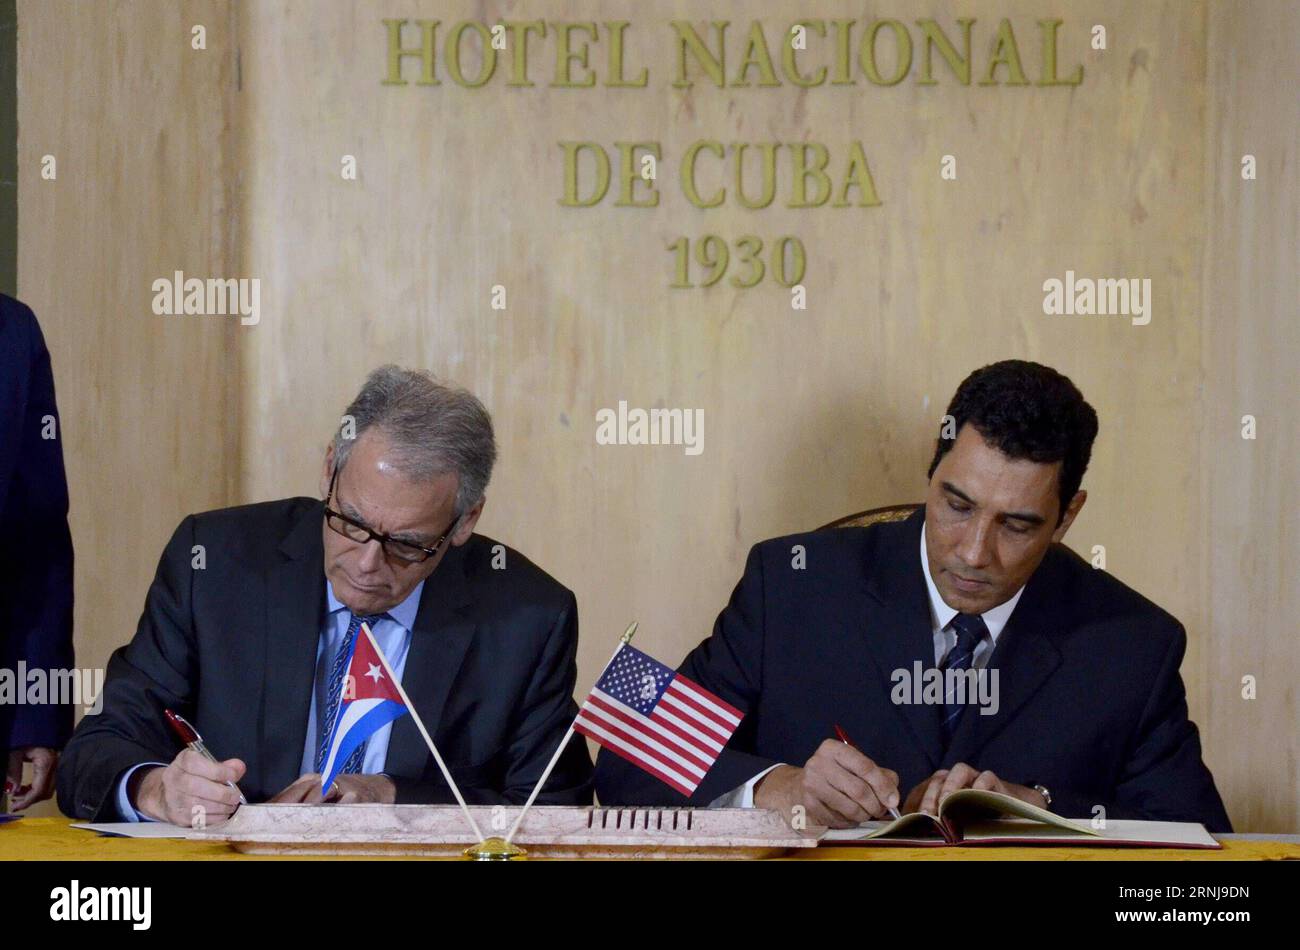 (170110) -- L'AVANA, 9 gennaio 2017 -- Eduardo Rodriguez(R), vice ministro dei trasporti di Cuba, e Jeffrey De Laurentis, incaricato d'affari presso l'ambasciata degli Stati Uniti a Cuba, firmano un accordo di cooperazione bilaterale a l'Avana, Cuba, il 9 gennaio 2017. Lunedì Cuba e gli Stati Uniti hanno firmato un accordo per cooperare per ripulire e contenere le future fuoriuscite di petrolio nel Golfo del Messico e nello stretto della Florida. )(gj) CUBA-HAVANA-US-COOPERAZIONE DEAL-OIL SPILL JoaquinxHernandez PUBLICATIONxNOTxINxCHN l'Avana 9 gennaio 2017 Eduardo Rodriguez r Cuba Vice Ministri dei trasporti e Jeffrey de Laurentis Foto Stock